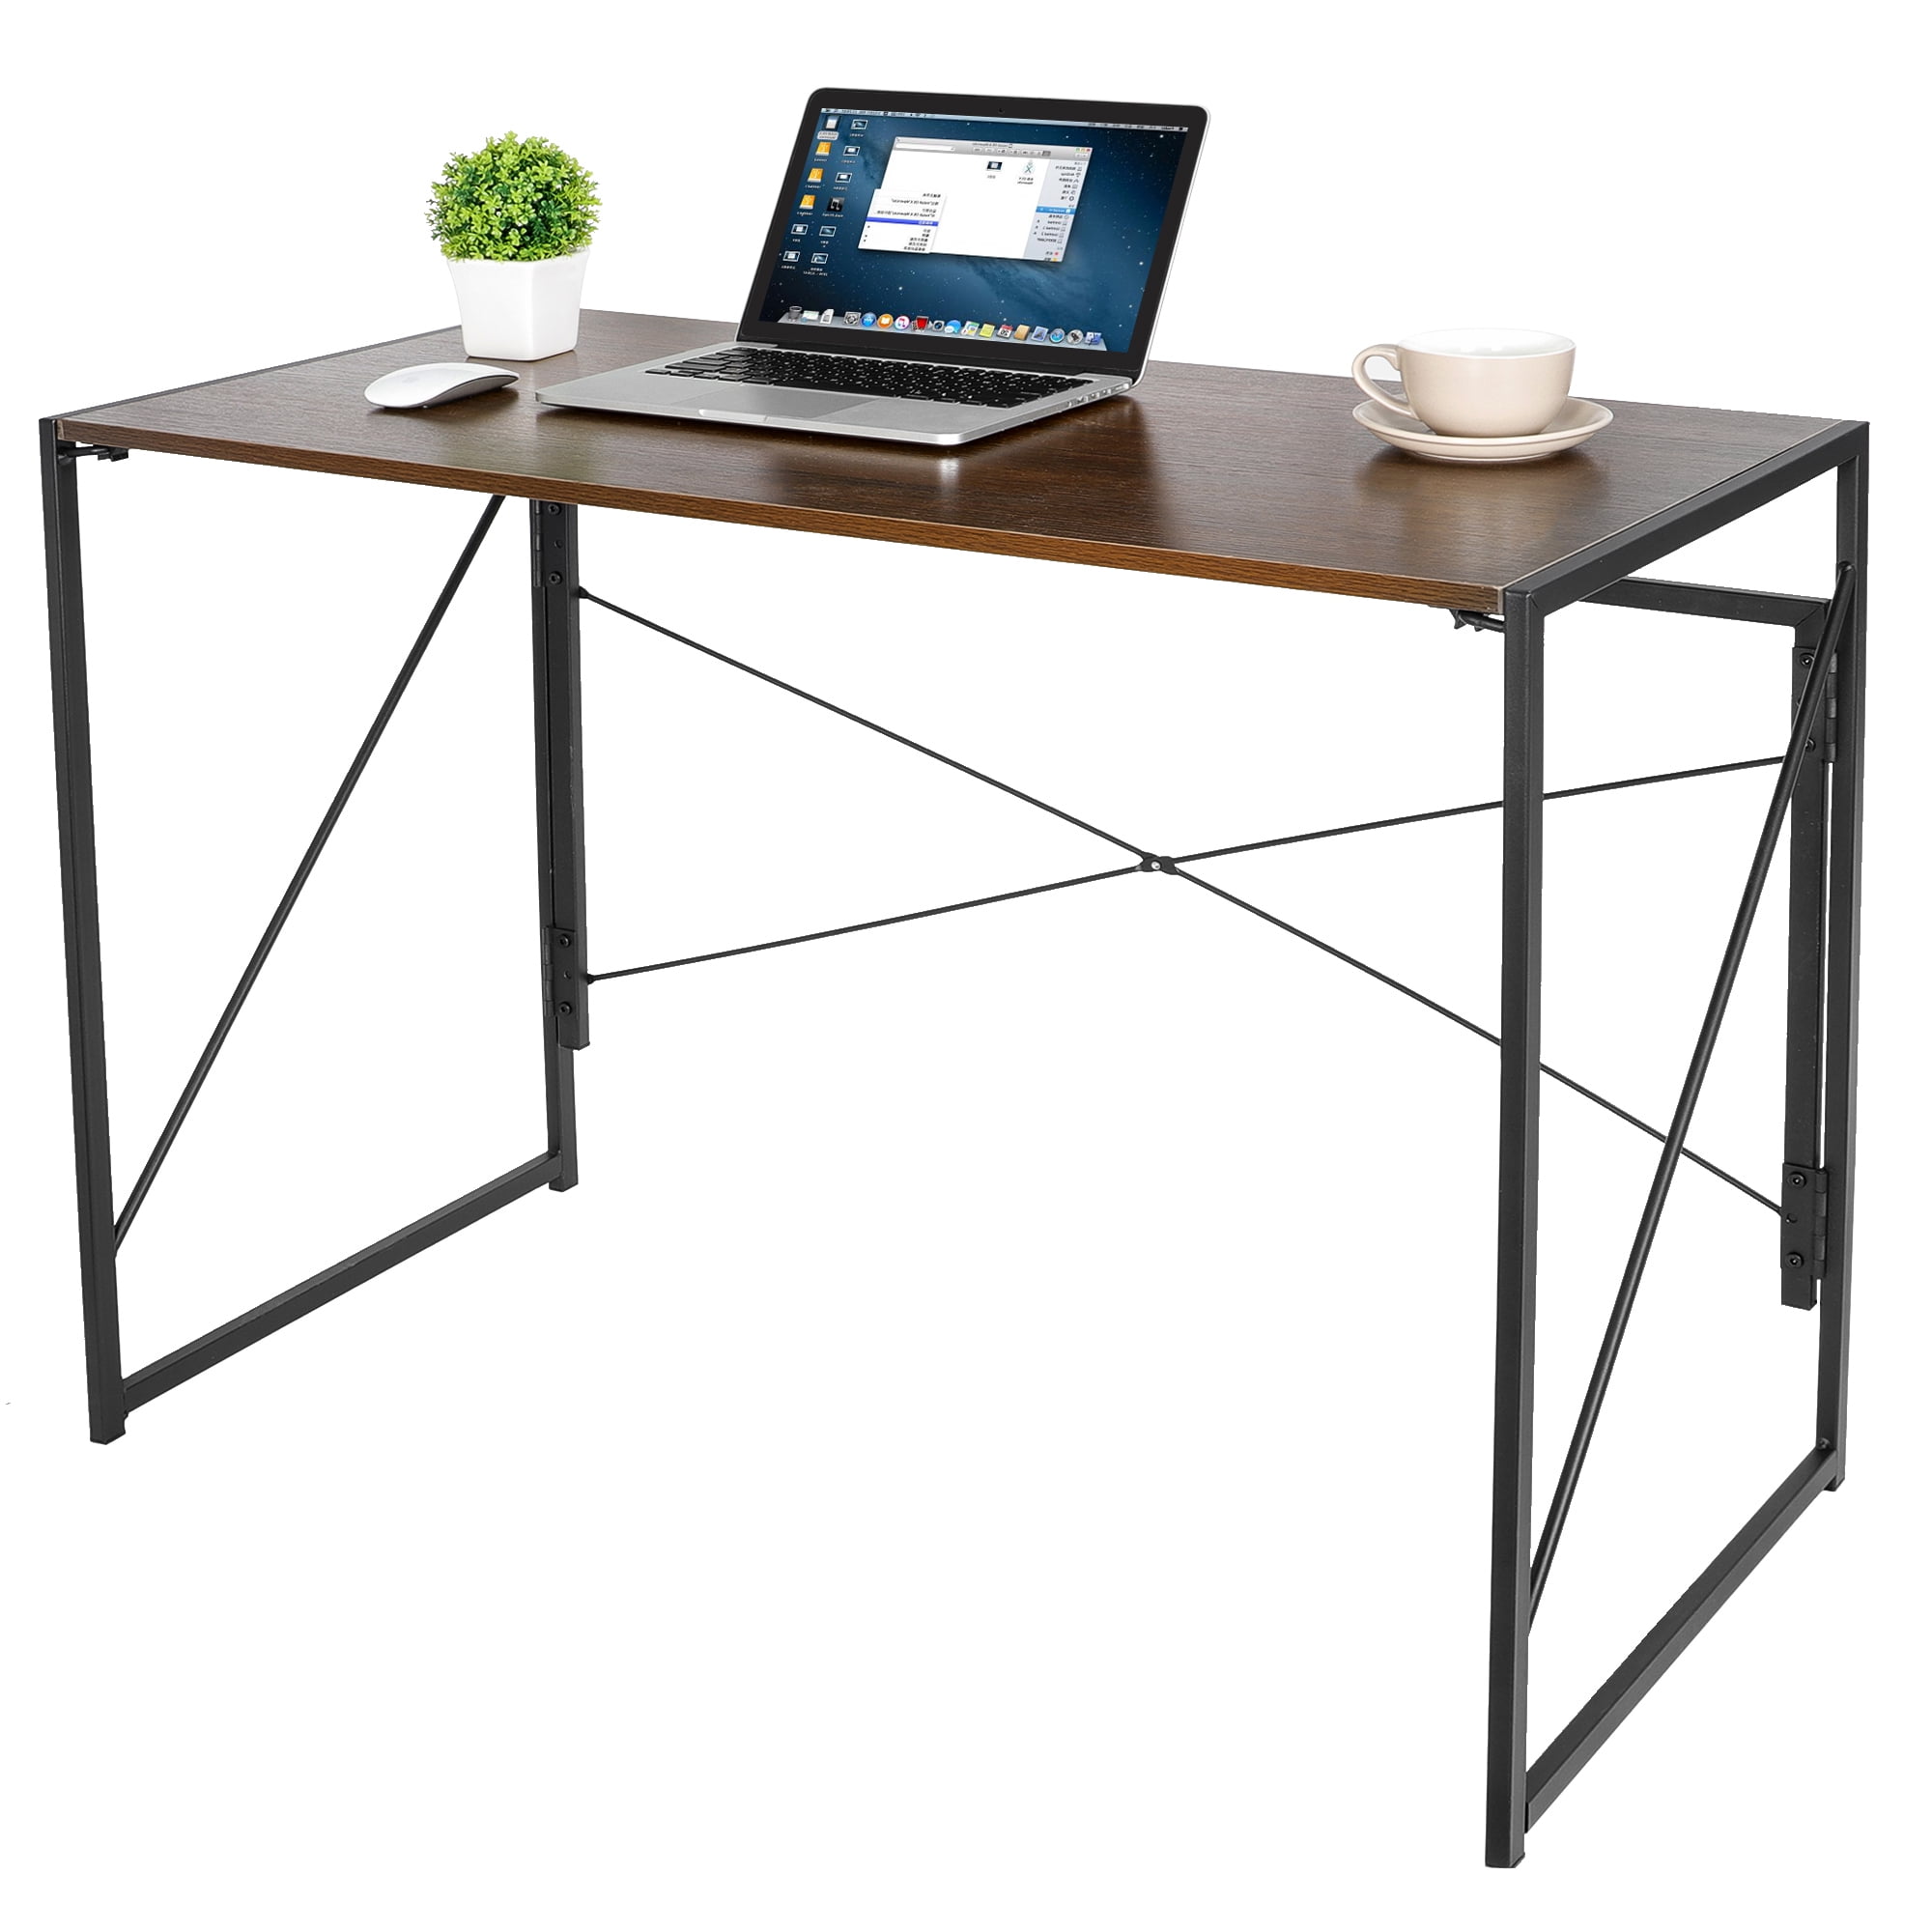 Cerizona Travel Lap Desk - Portable Lap Desk for Car, Remote Work, Trips, School - Storage Pockets, Laptop Tablet Sleeve, Cup Holder, Adjustable